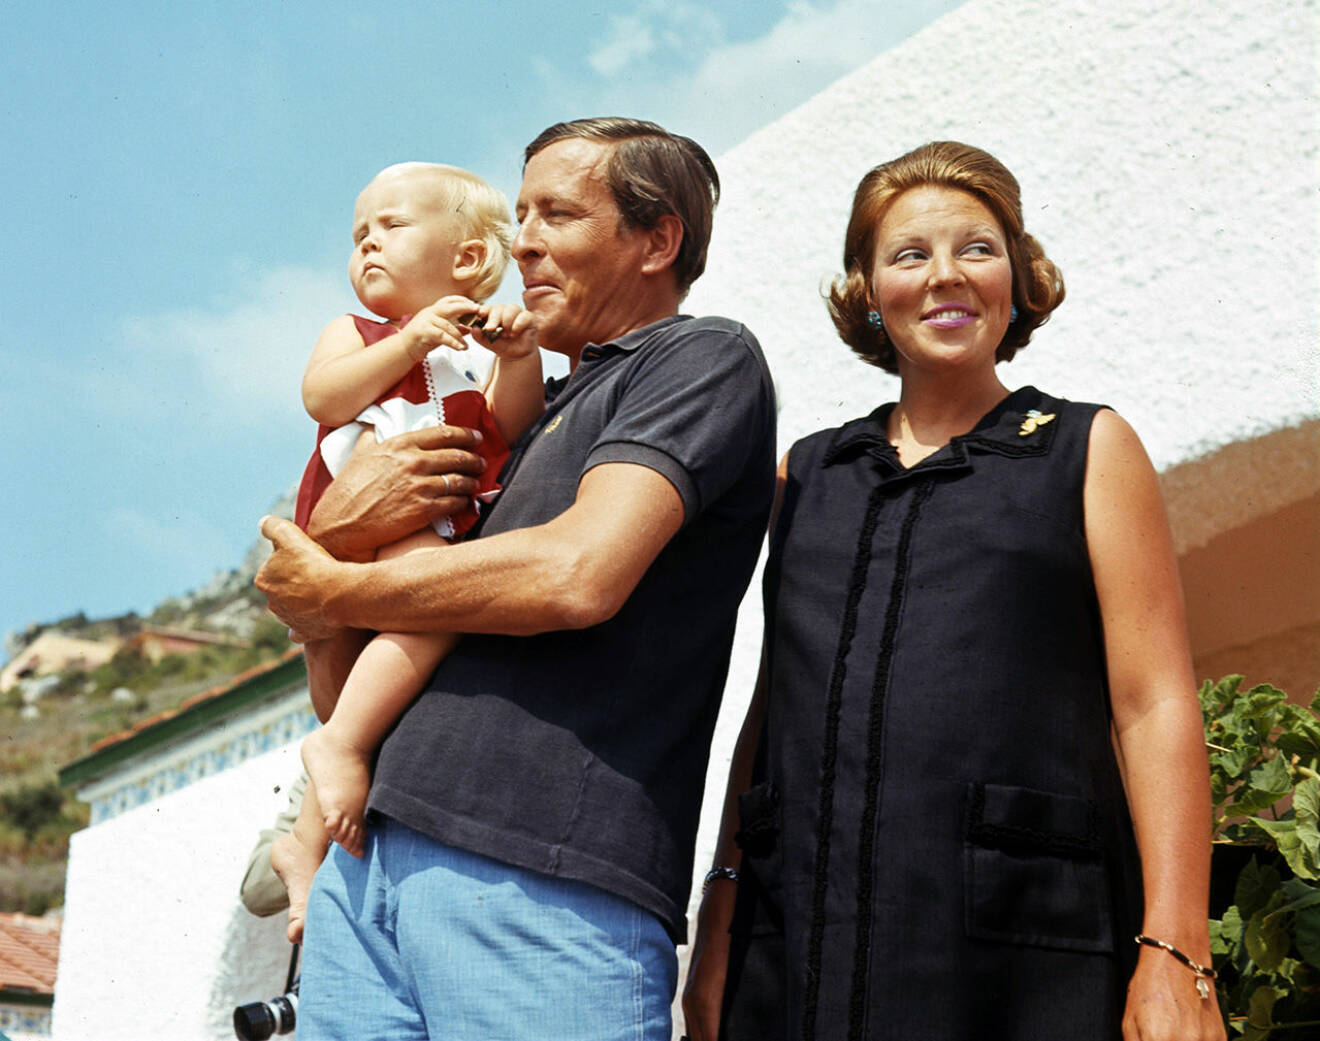 Drottning Beatrix tillsammans med sin man prins Claus von Amsberg med deras son prins Willem Alexander. 